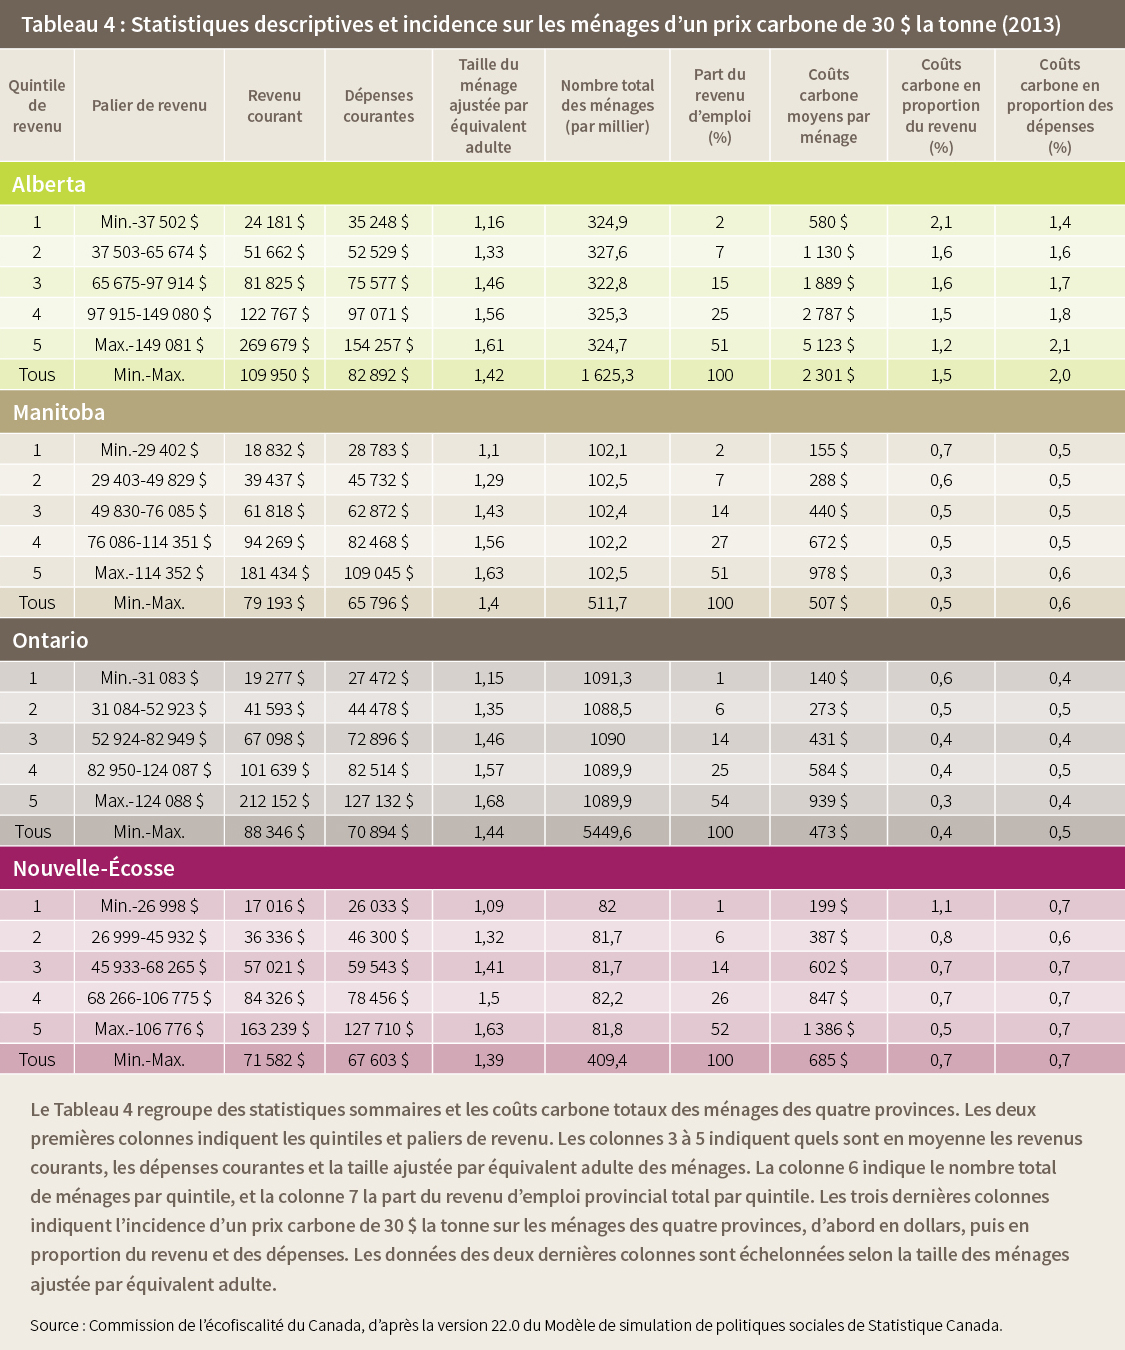 Tableau 4 : Statistiques descriptives et incidence sur les ménages d’un prix carbone de 30 $ la tonne (2013)